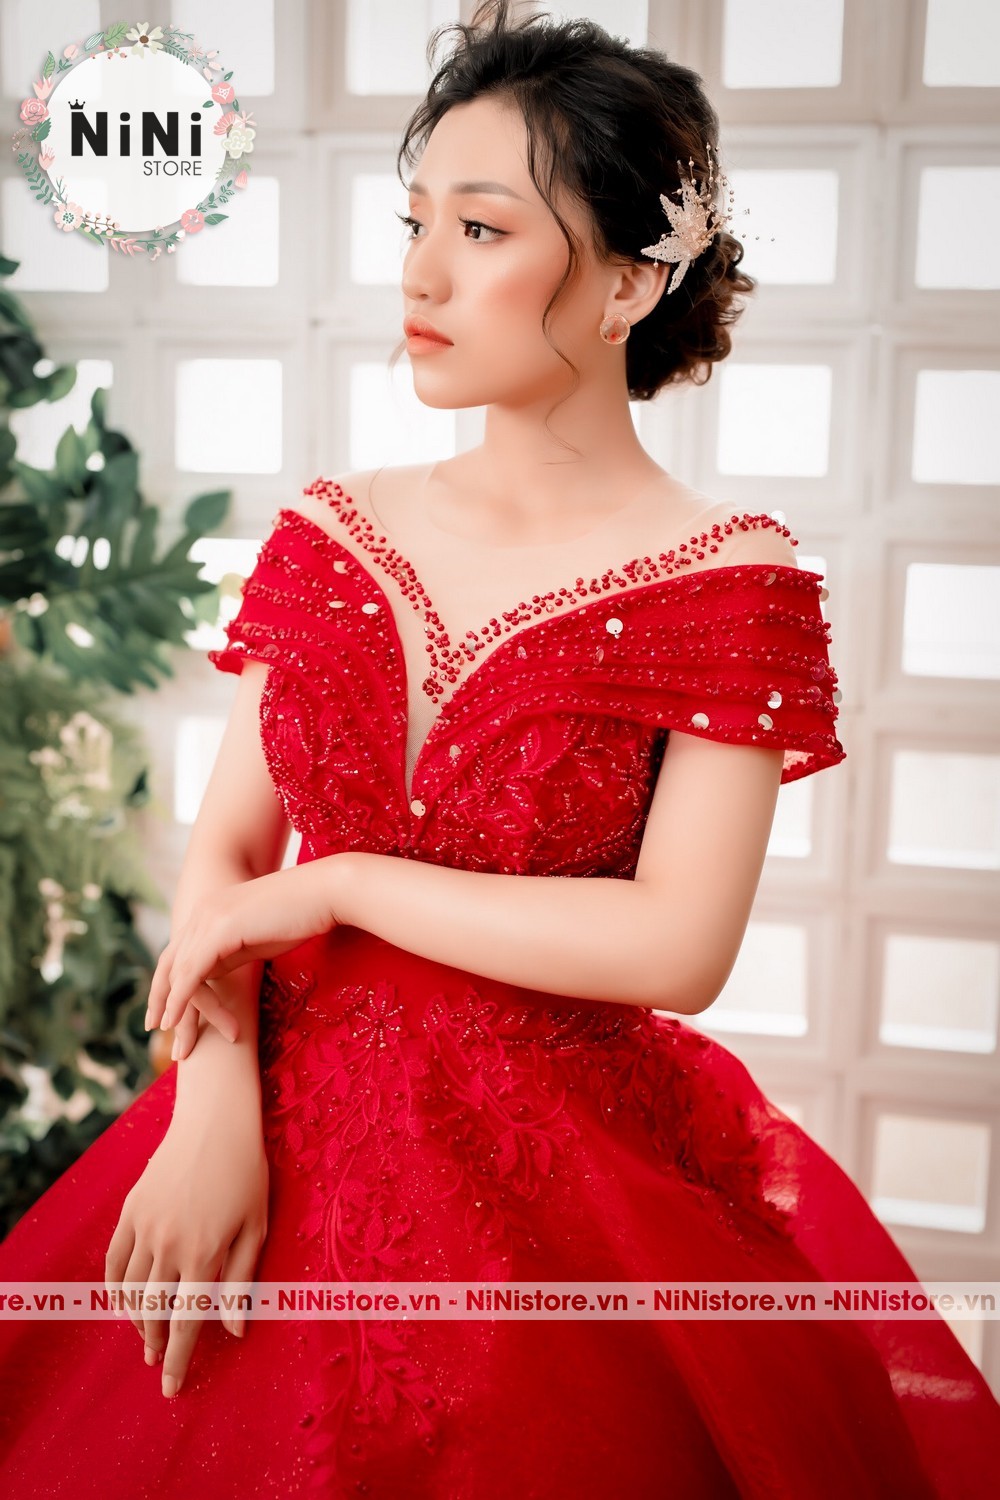 Top 10 mẫu váy cưới màu đỏ đẹp đơn giản ấn tượng nhất